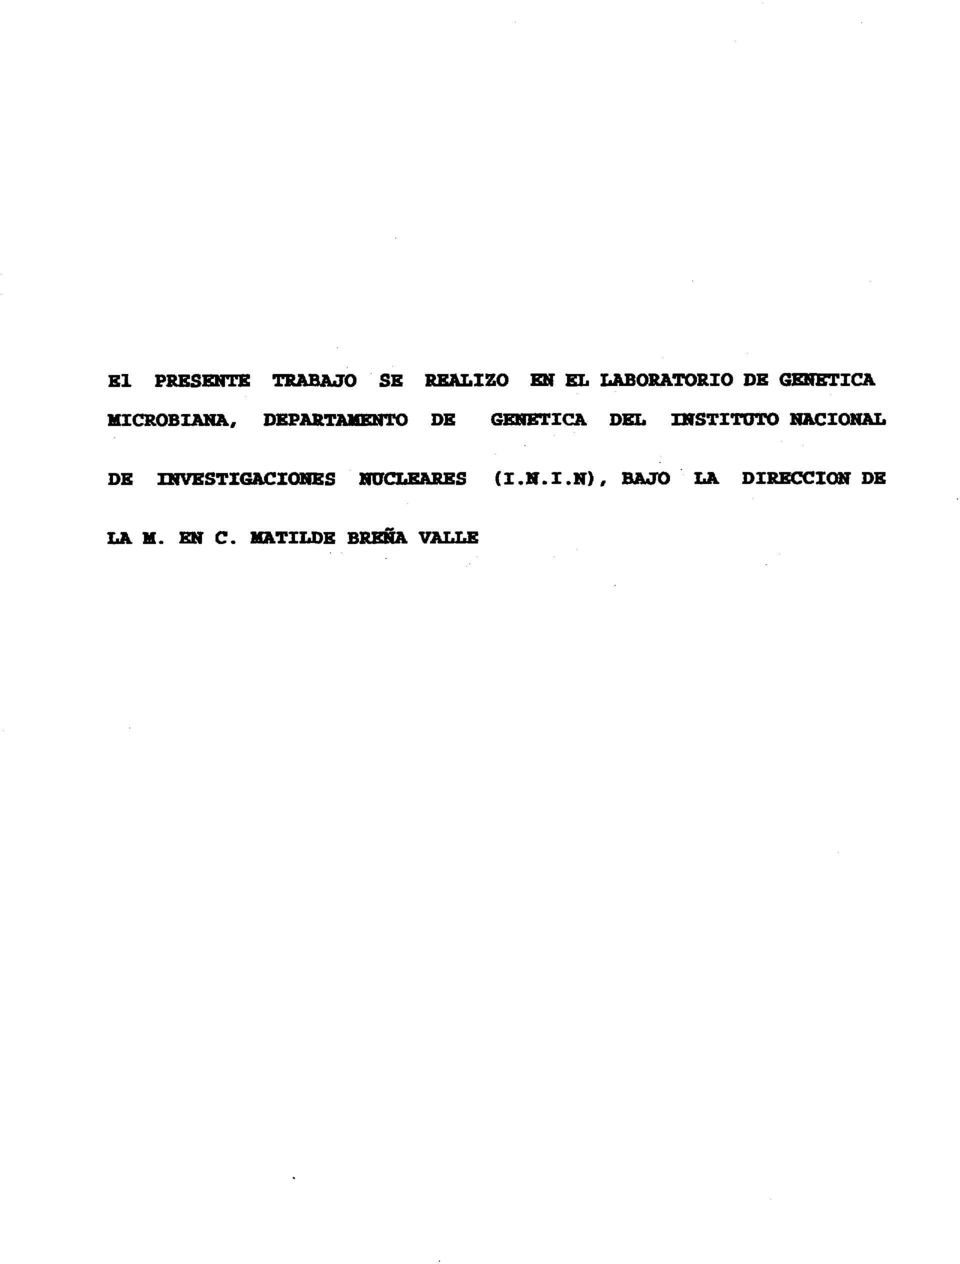 INSTITUTO NACIONAL DE INVESTIGACIONES NUCLEARES (I.N.I.N), BAJO LA DIRECCIÓN DE LA M.